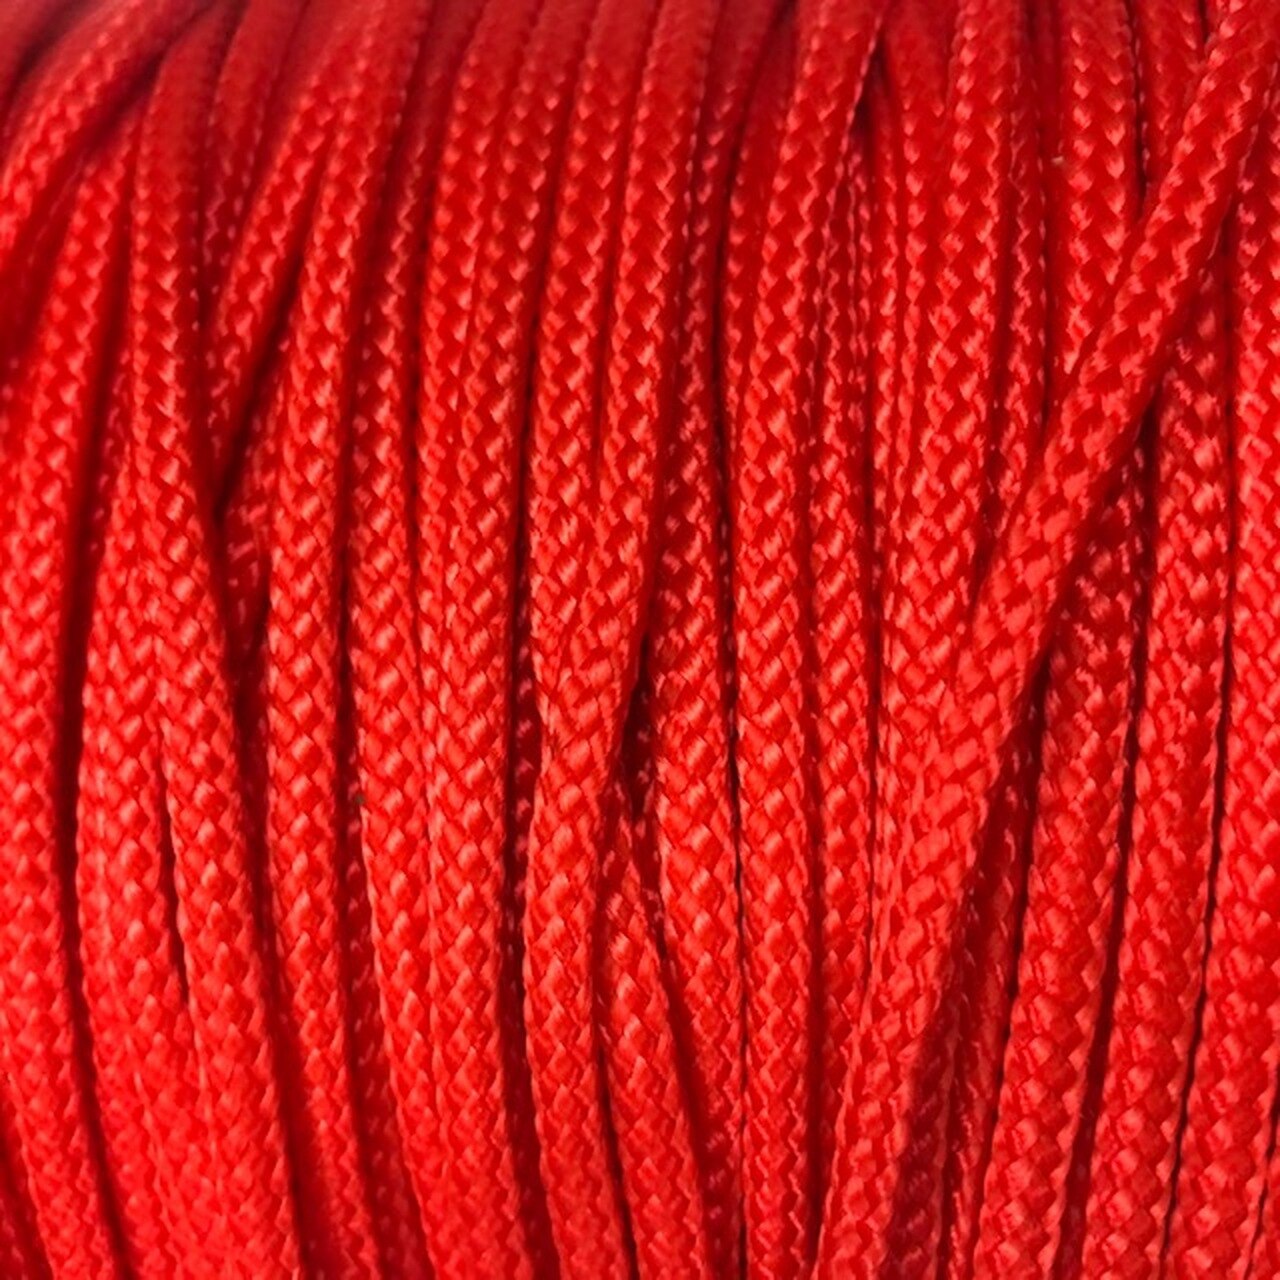 Δύο τεμάχια κόκκινου χρώματος σε προσφορά